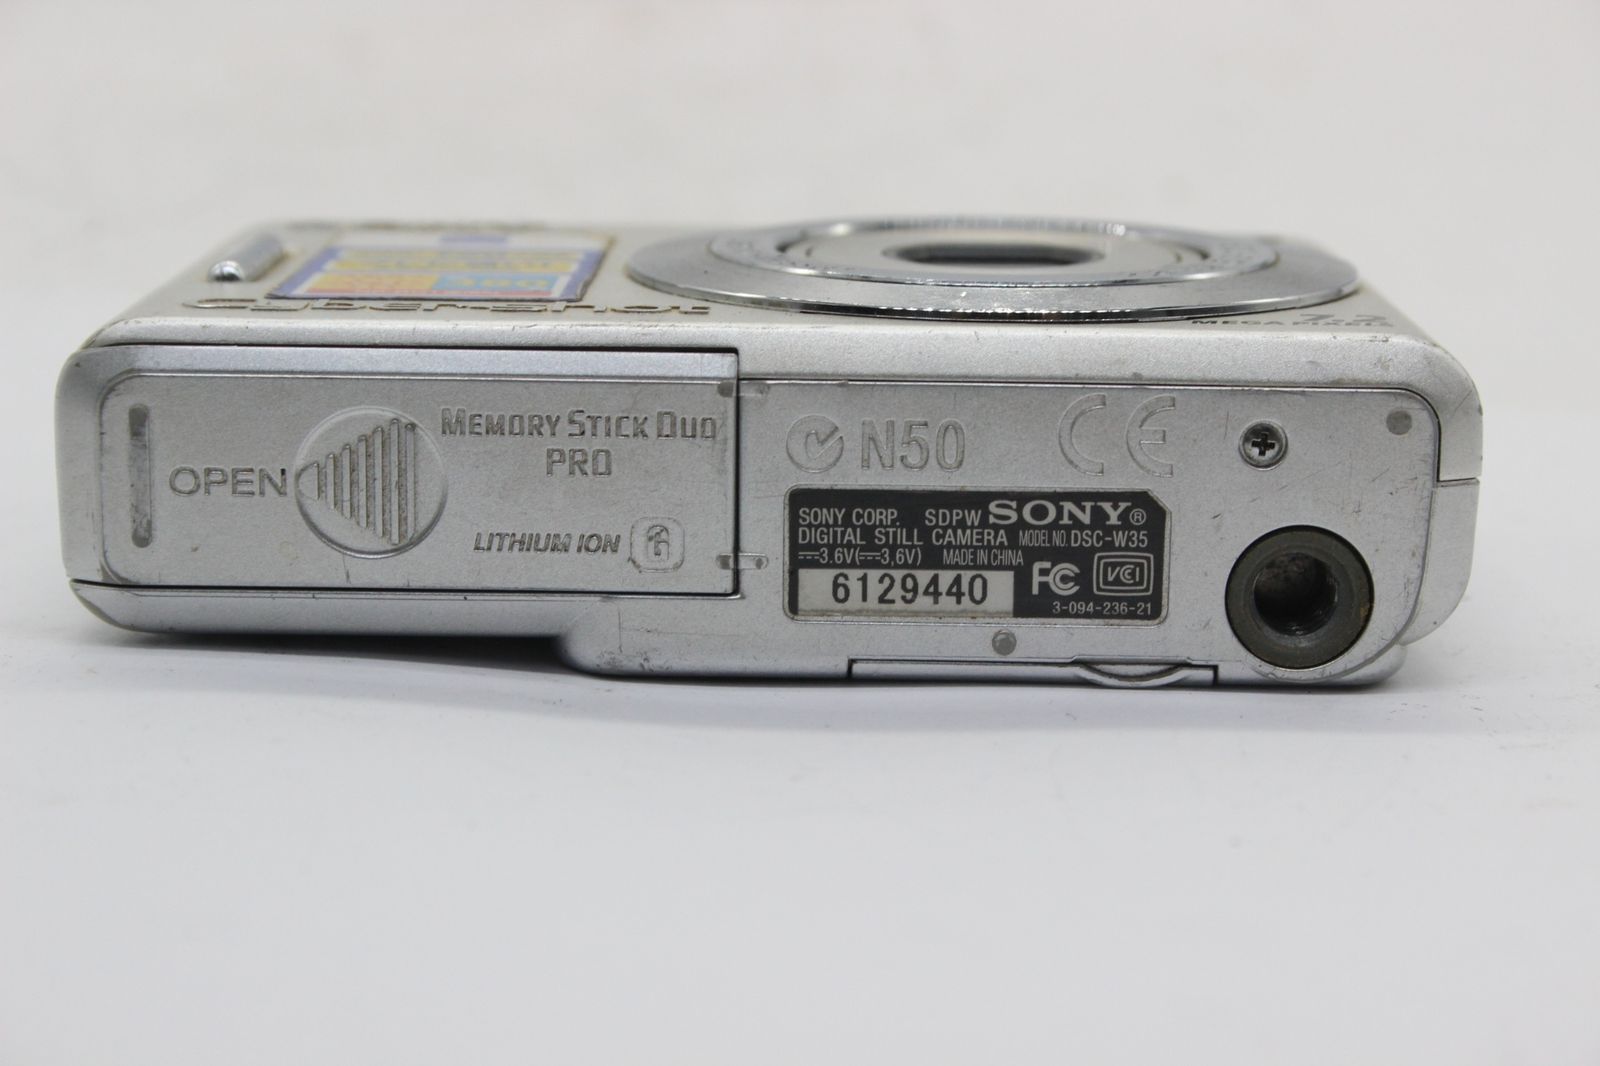 SONY 【返品保証】 ソニー SONY Cyber-shot DSC-W35 3x バッテリー付き コンパクトデジタルカメラ s9920